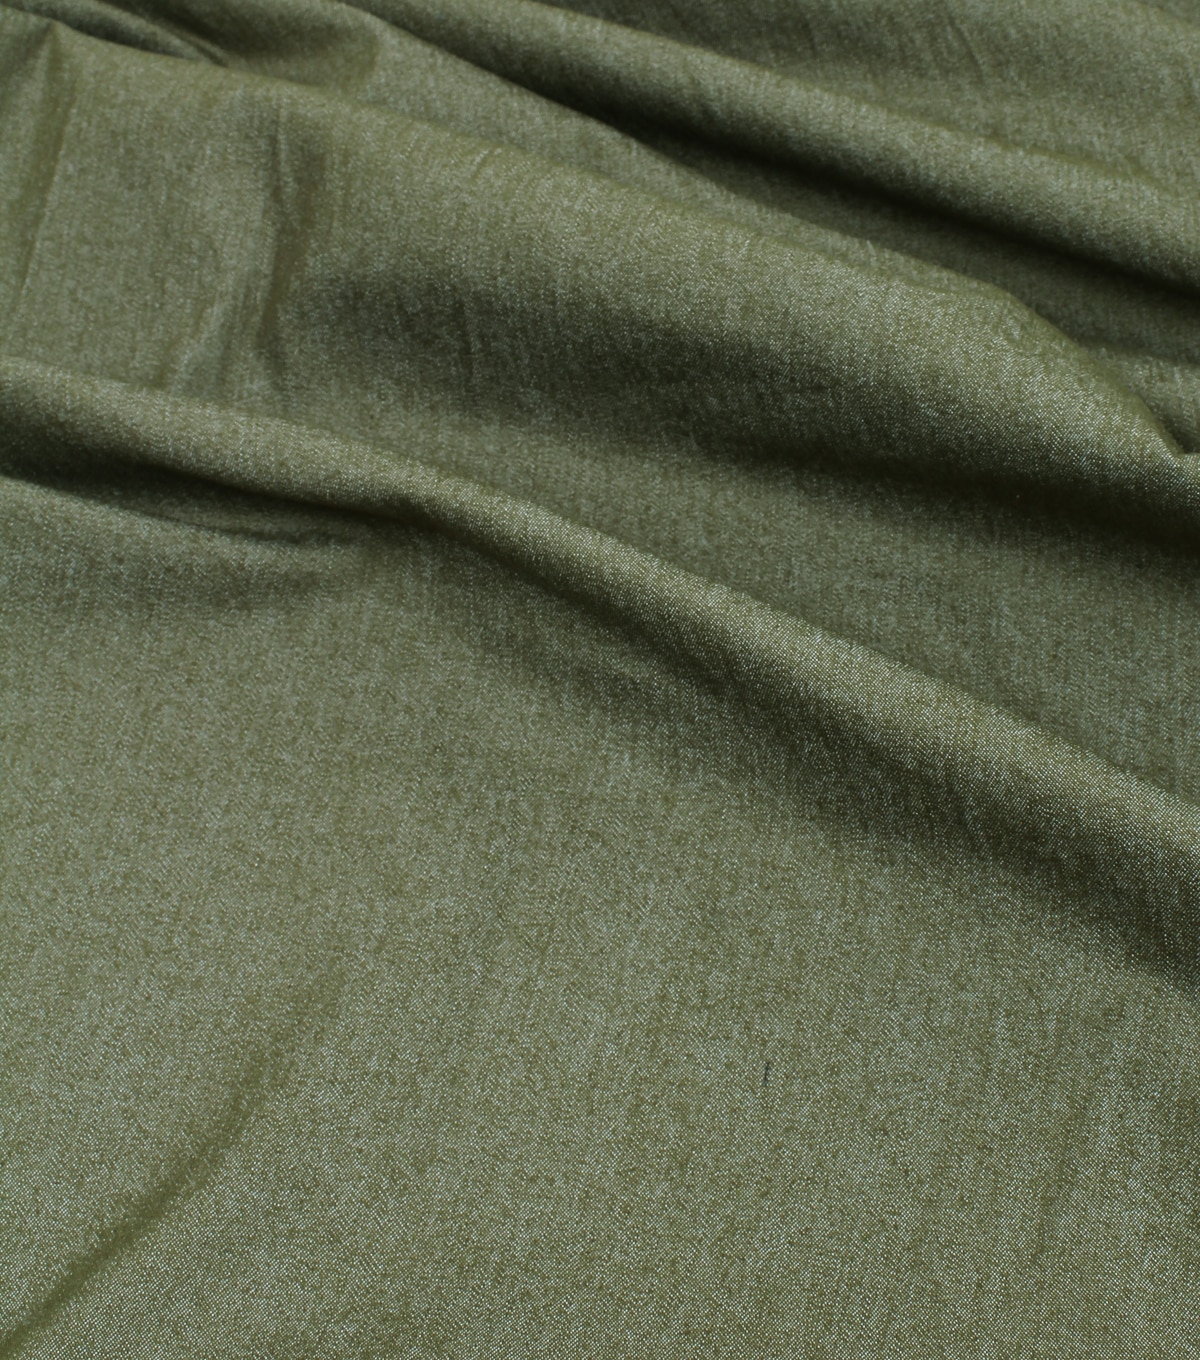 8oz Stretch Denim Fabric Olive Green Solid | JOANN